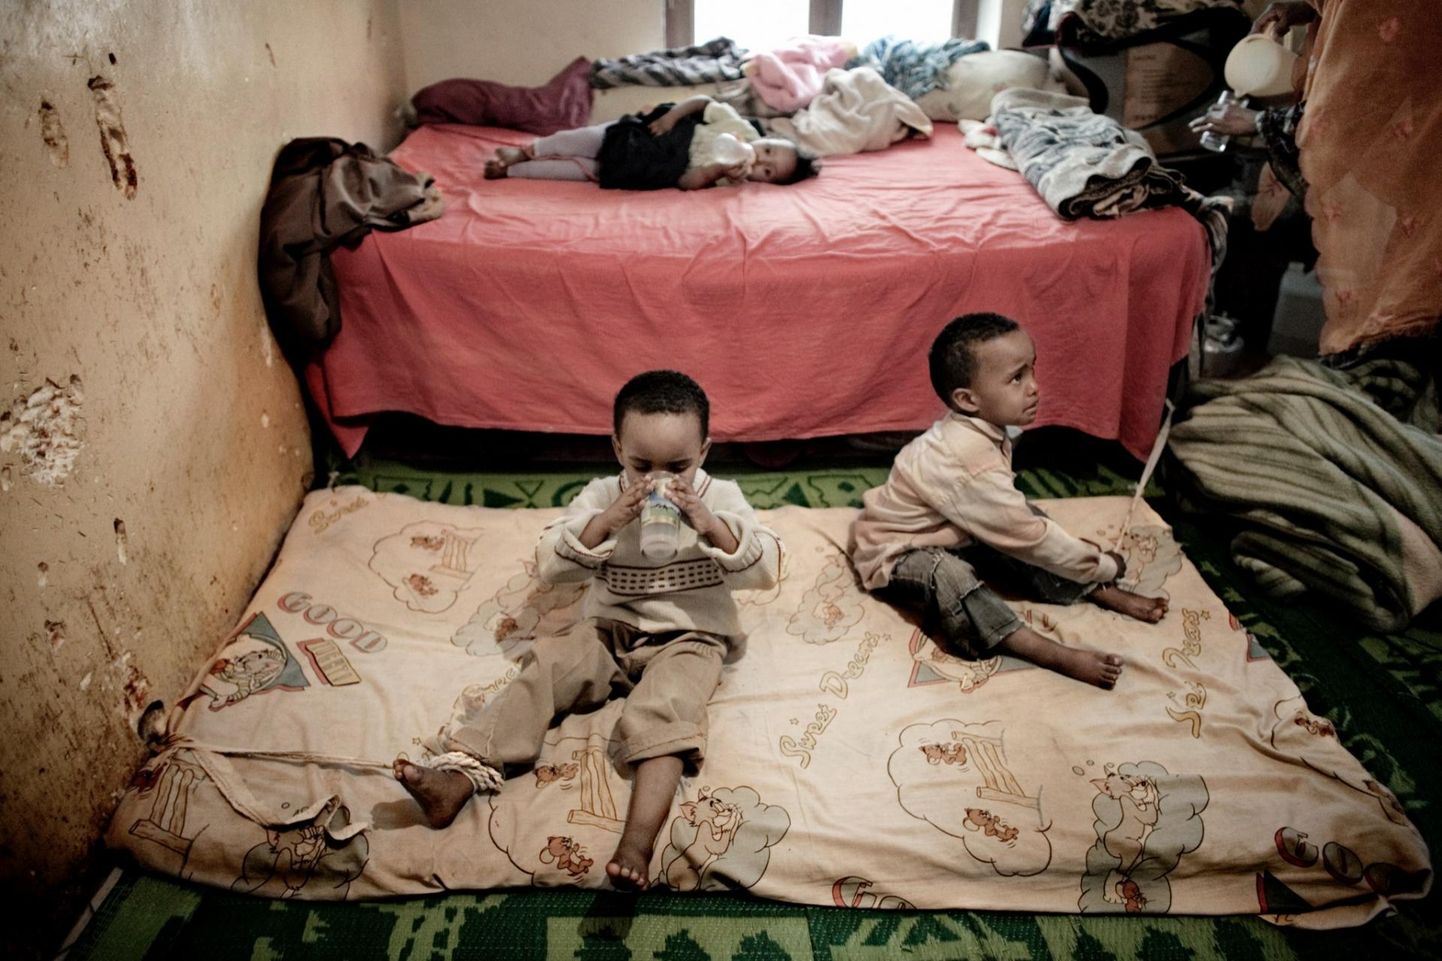 Kolmeaastased kaksikud Hassan ja Hossin ning nende kahe-aastane õde Hannan peavad olema kuus tundi päevas seina külge köidetuna kodus, sest nende ema Selma Ahmed Adem on tööl ja pole kedagi, kes laste järele vaataks. Selma on Somaalia põgenik Jeemenis, kes töötab toateenijana ja teenib umbes 50 dollarit kuus.